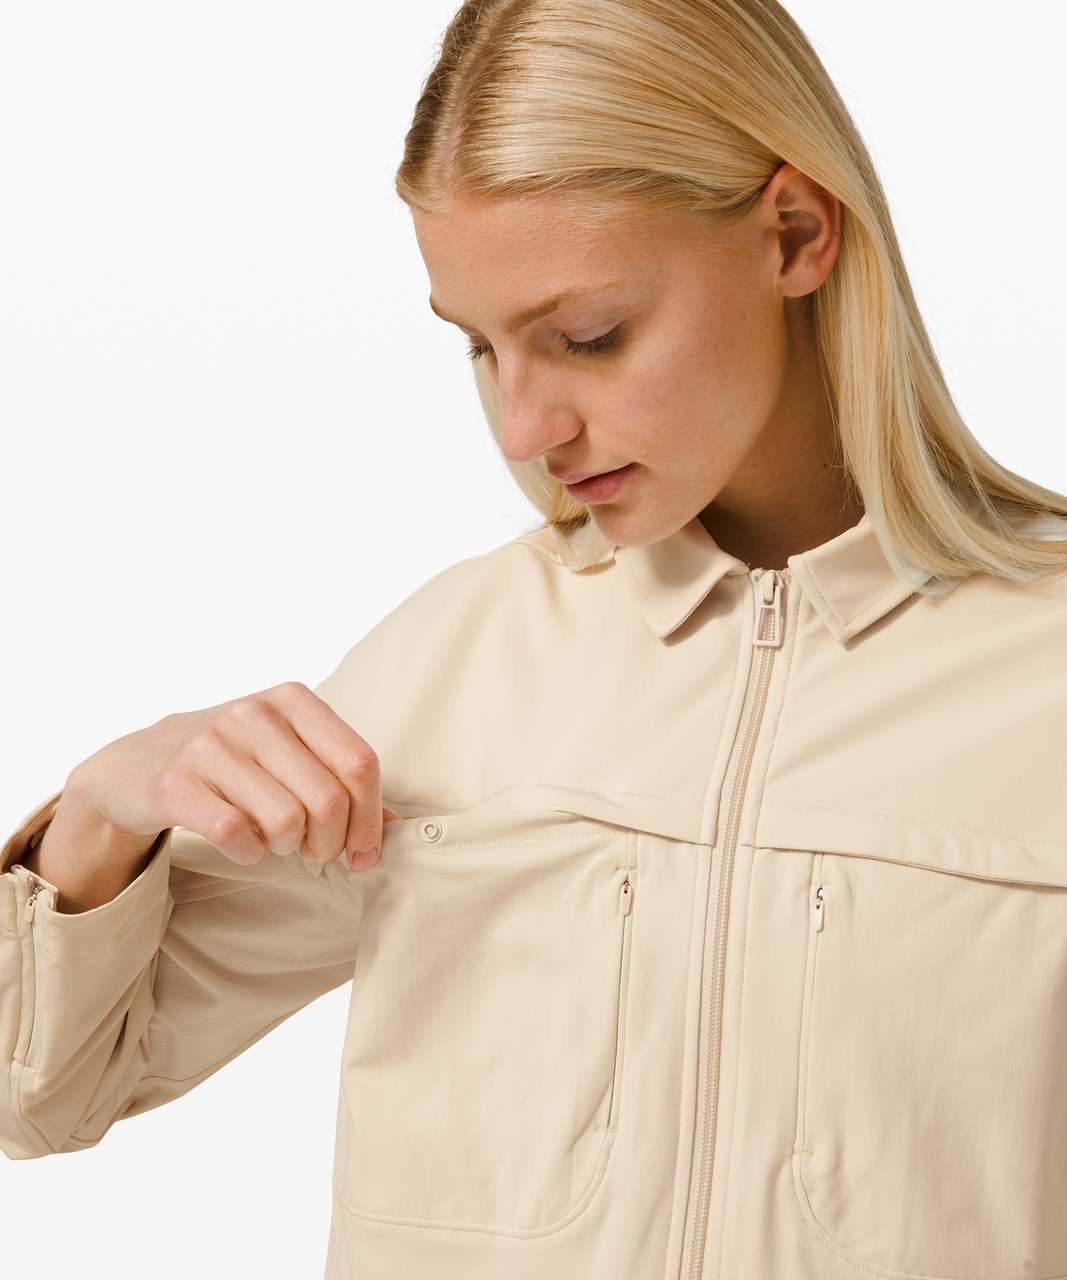 Lululemon Zip-Up Shirt Jacket - White Opal